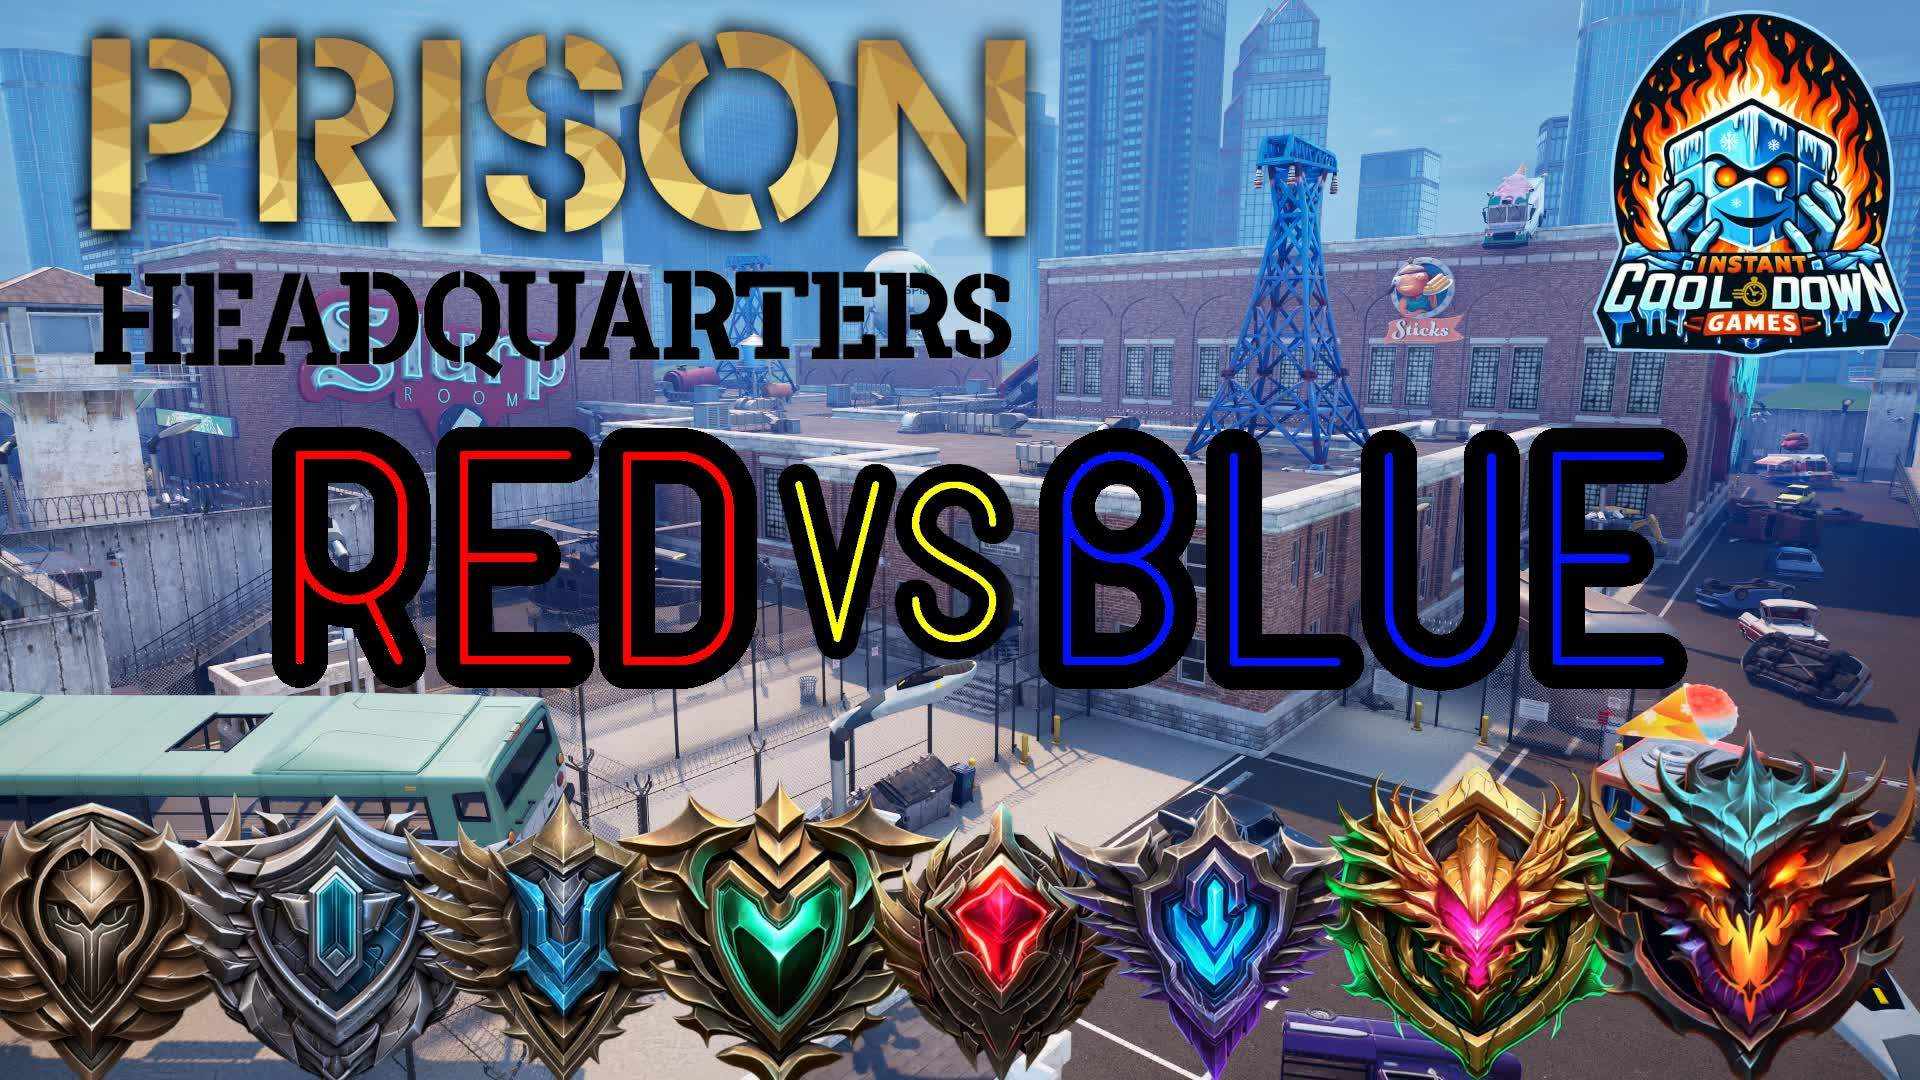 ☣️ Prison HQ 🔴 RED vs BLUE 🔵